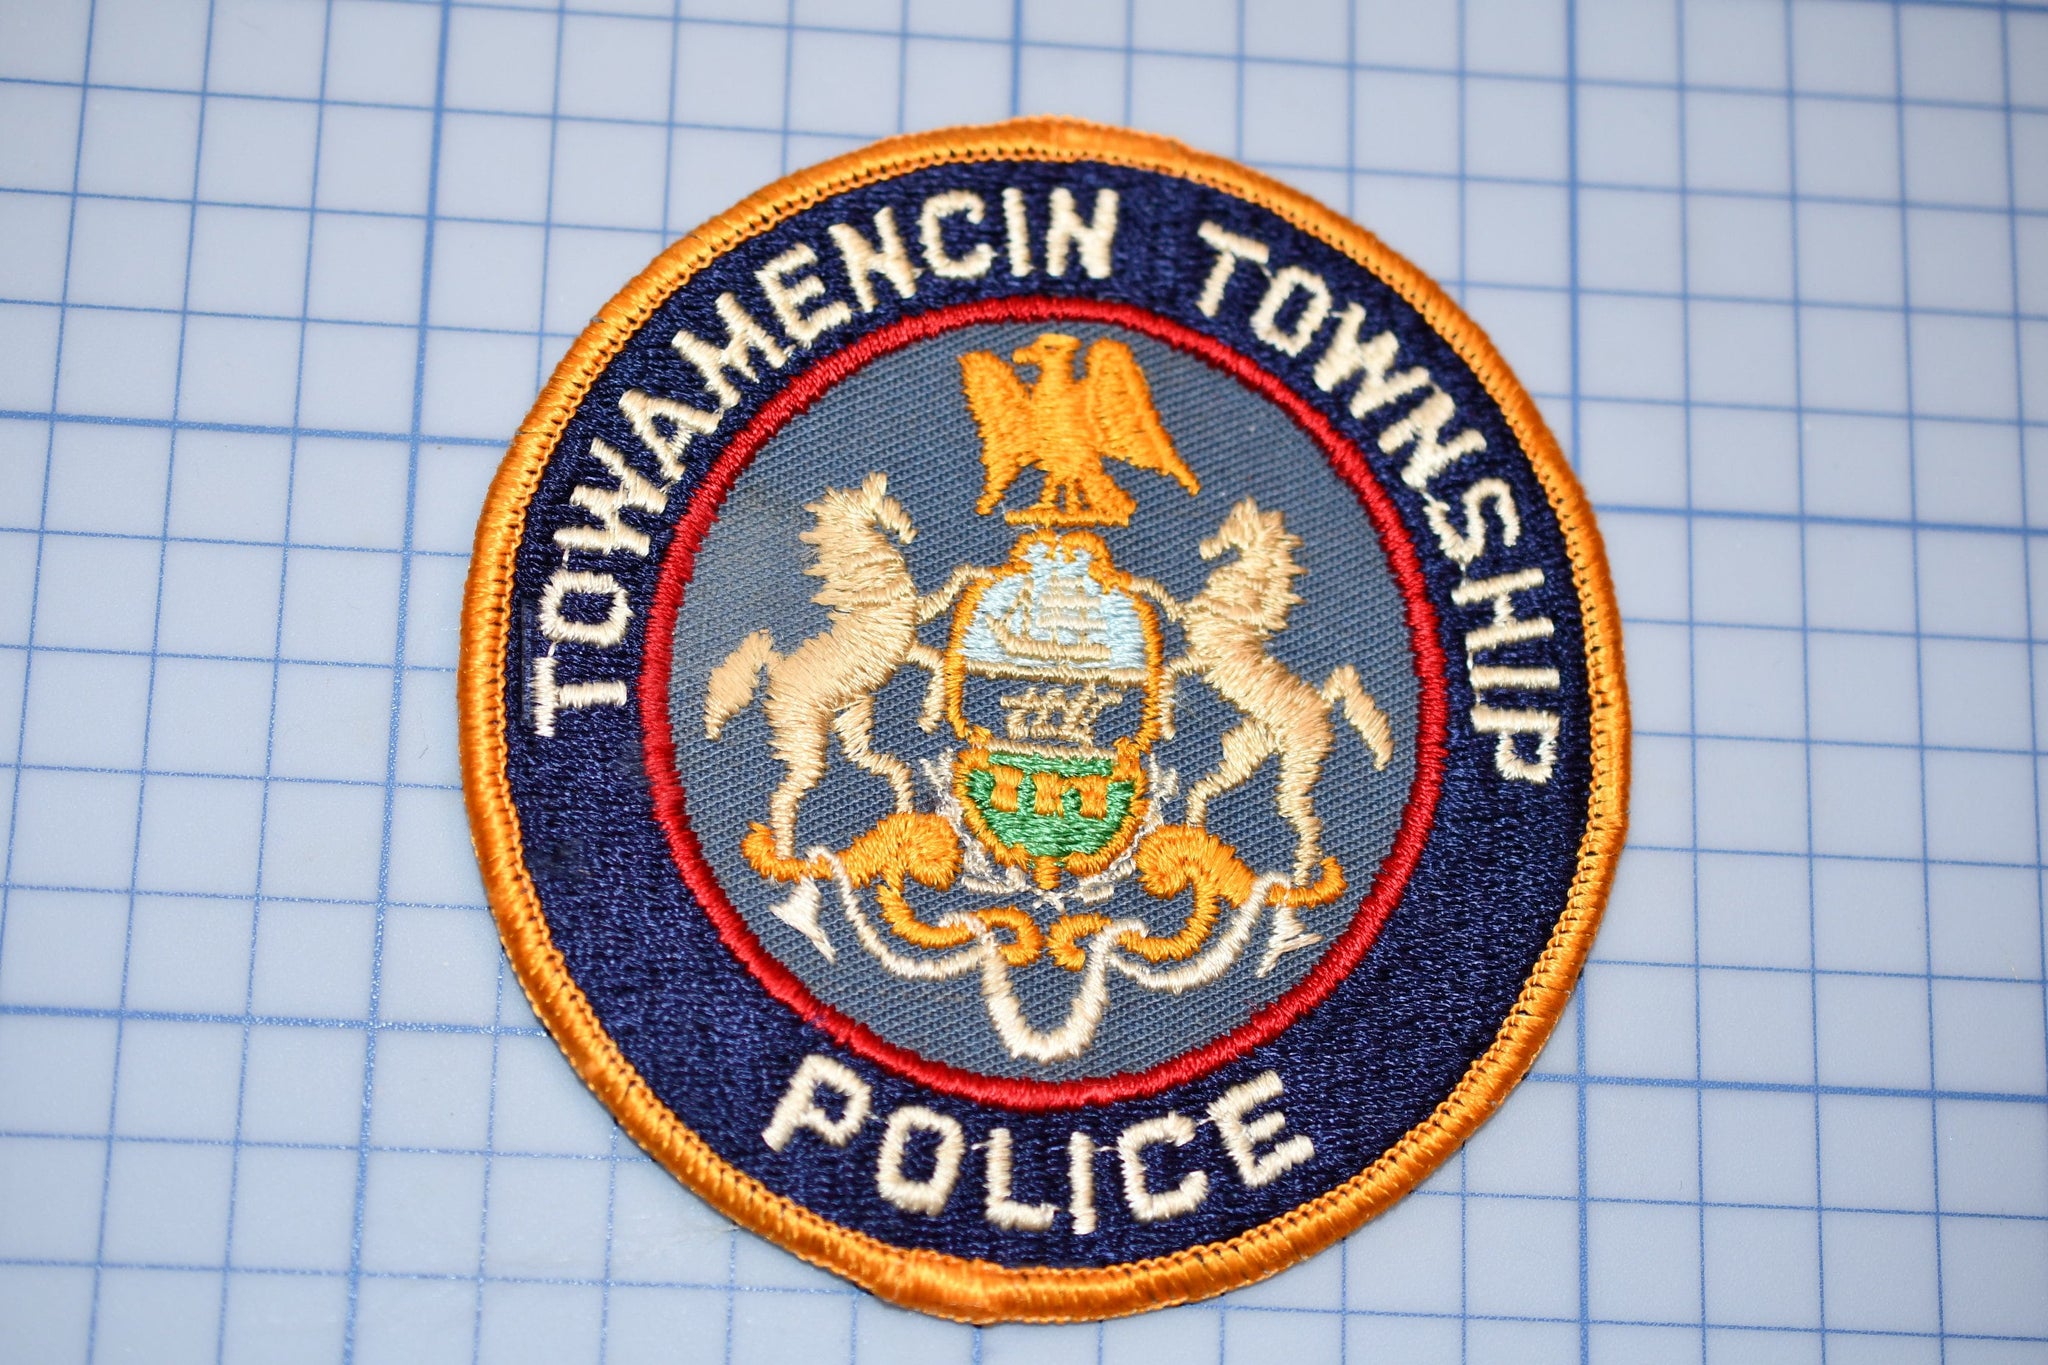 Towamencin Township Pennsylvania Police Patch (B23-336)